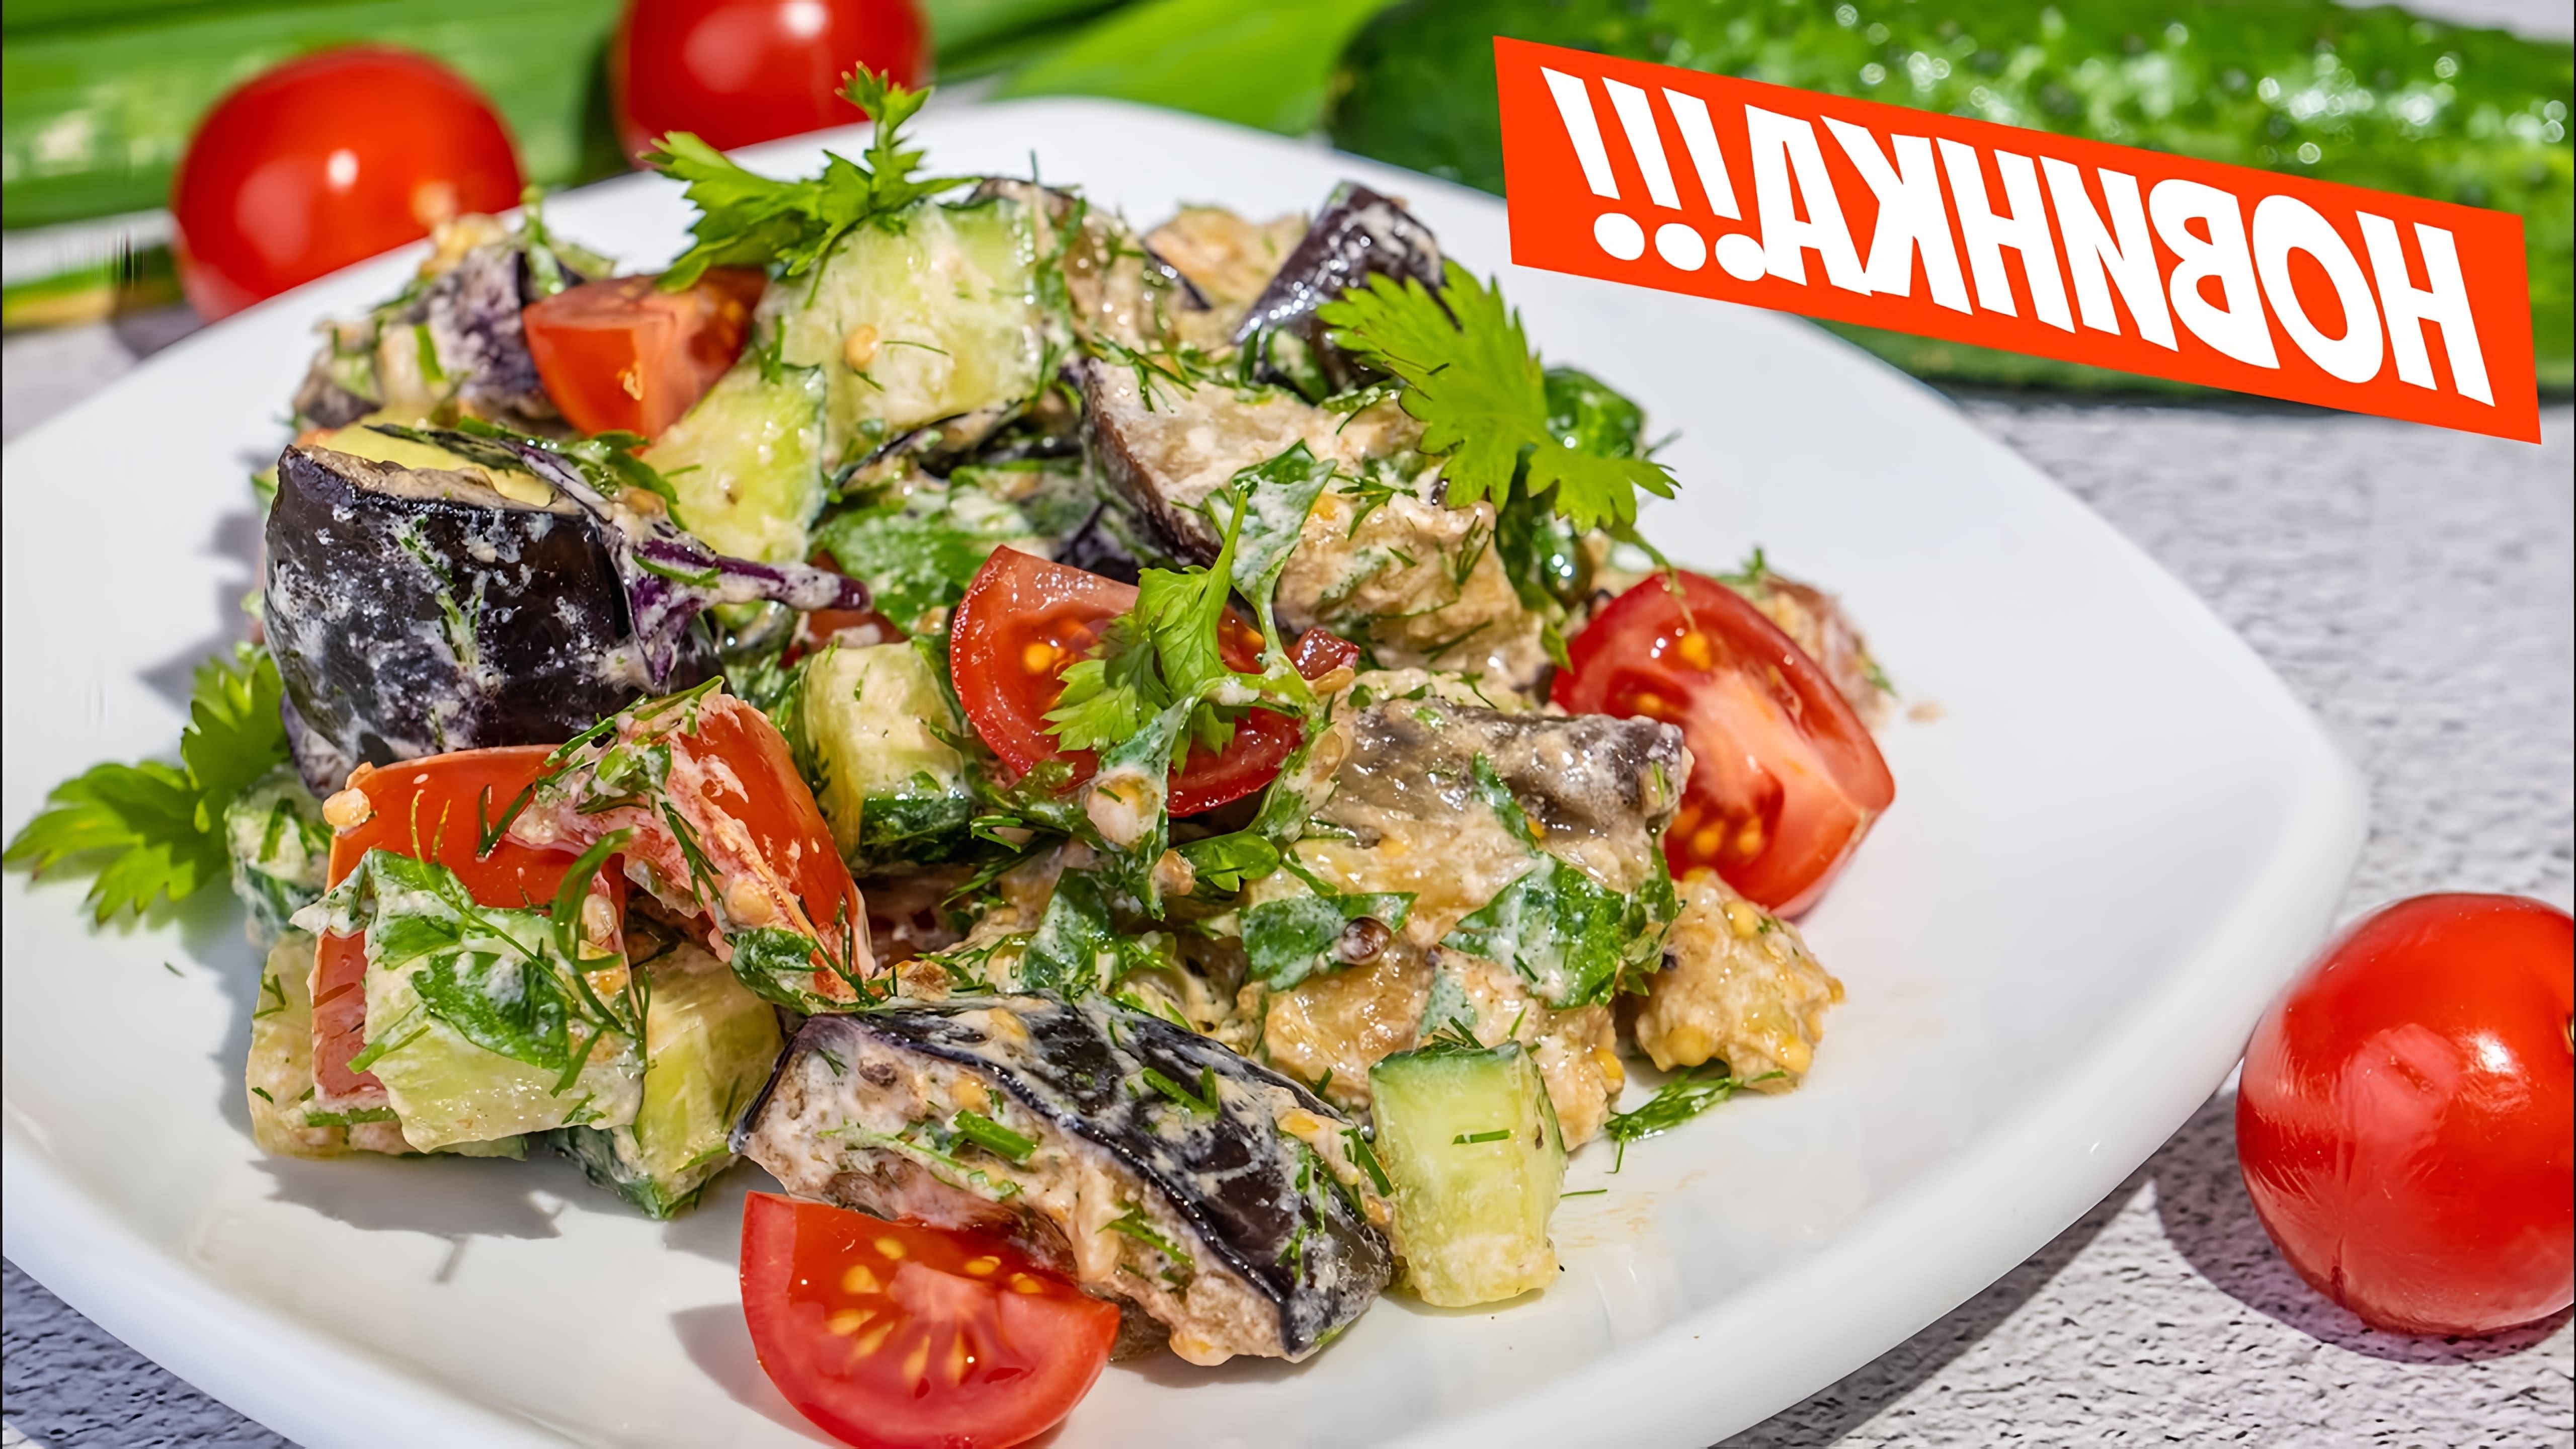 В этом видео демонстрируется рецепт салата из баклажанов, который готовится из трех основных ингредиентов: баклажанов, огурцов и помидоров